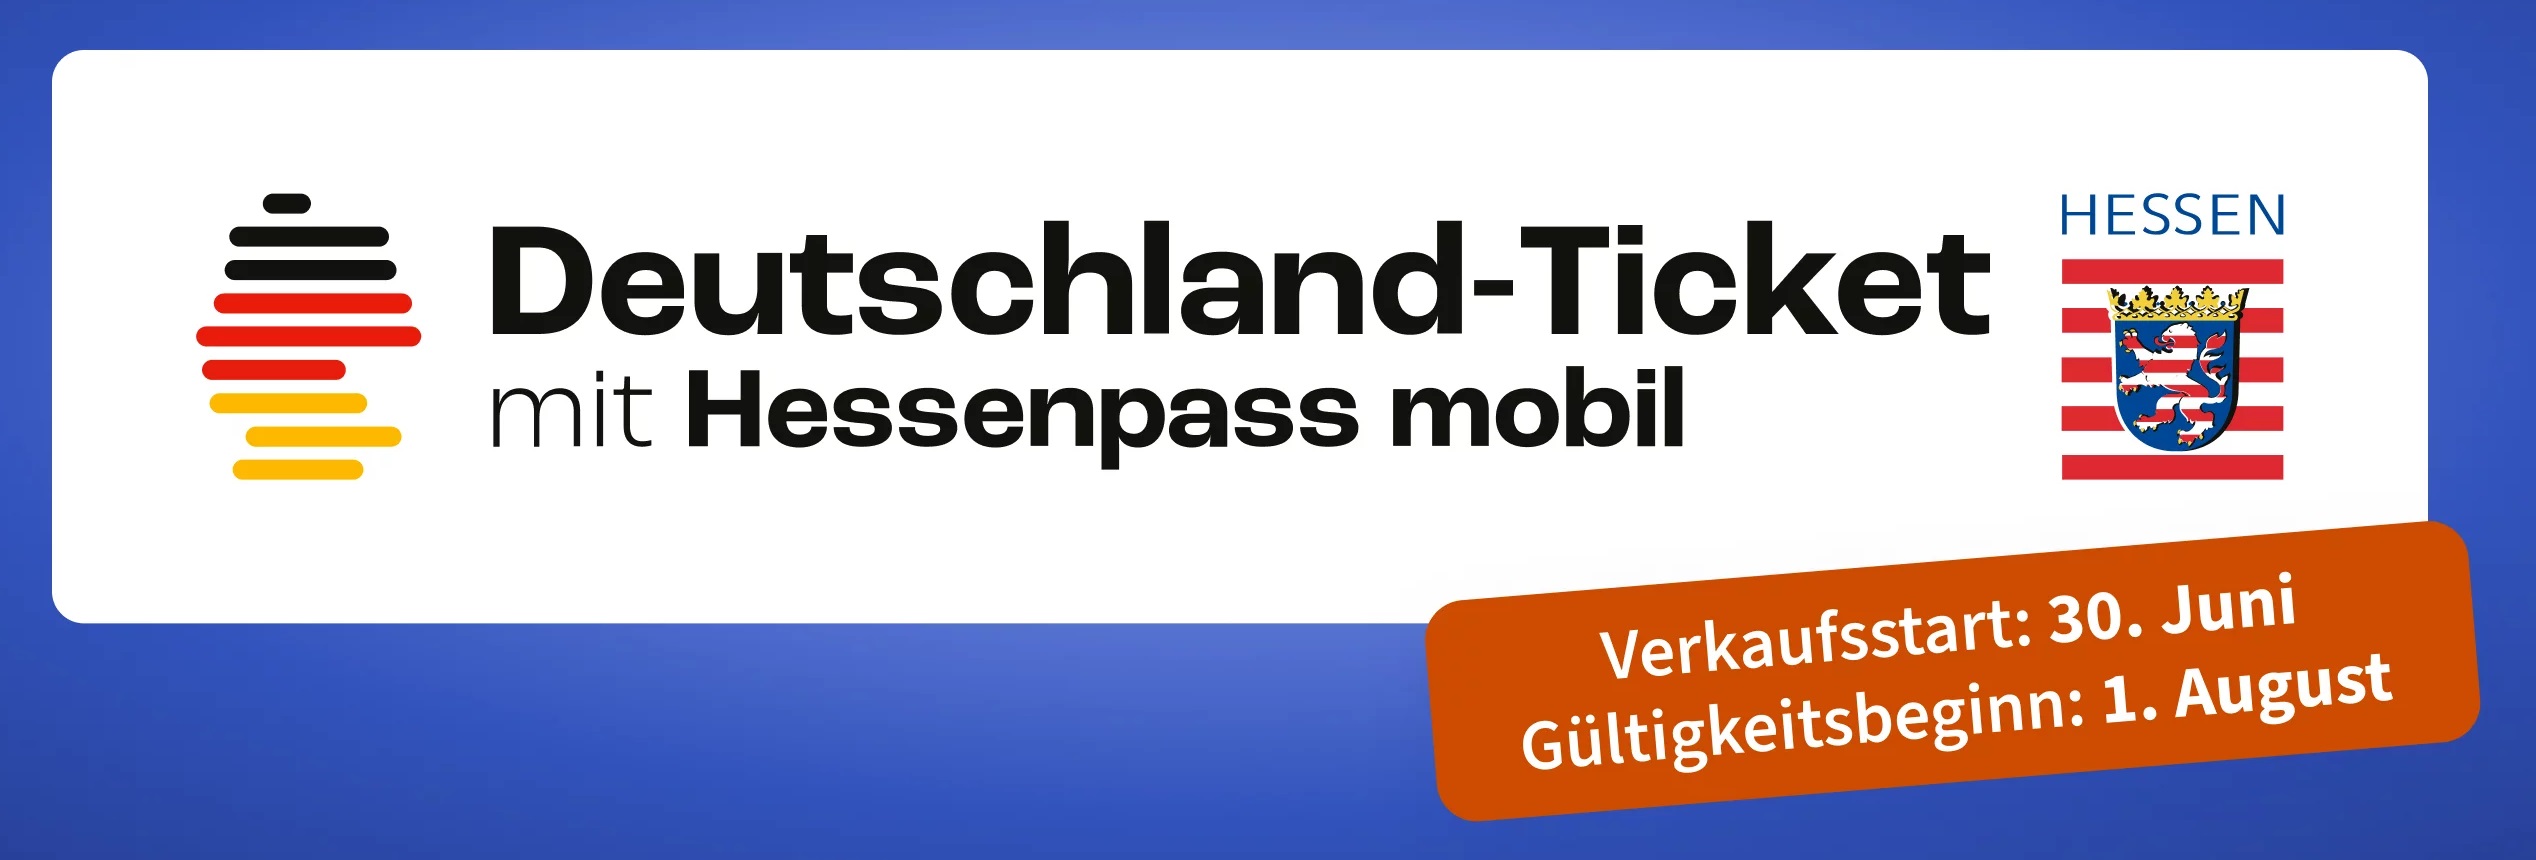 Schriftzug Deutschland-Ticket mit Hessenpass mobil, daneben die Logos von Hessen und der Bundesrepublik Deutschland